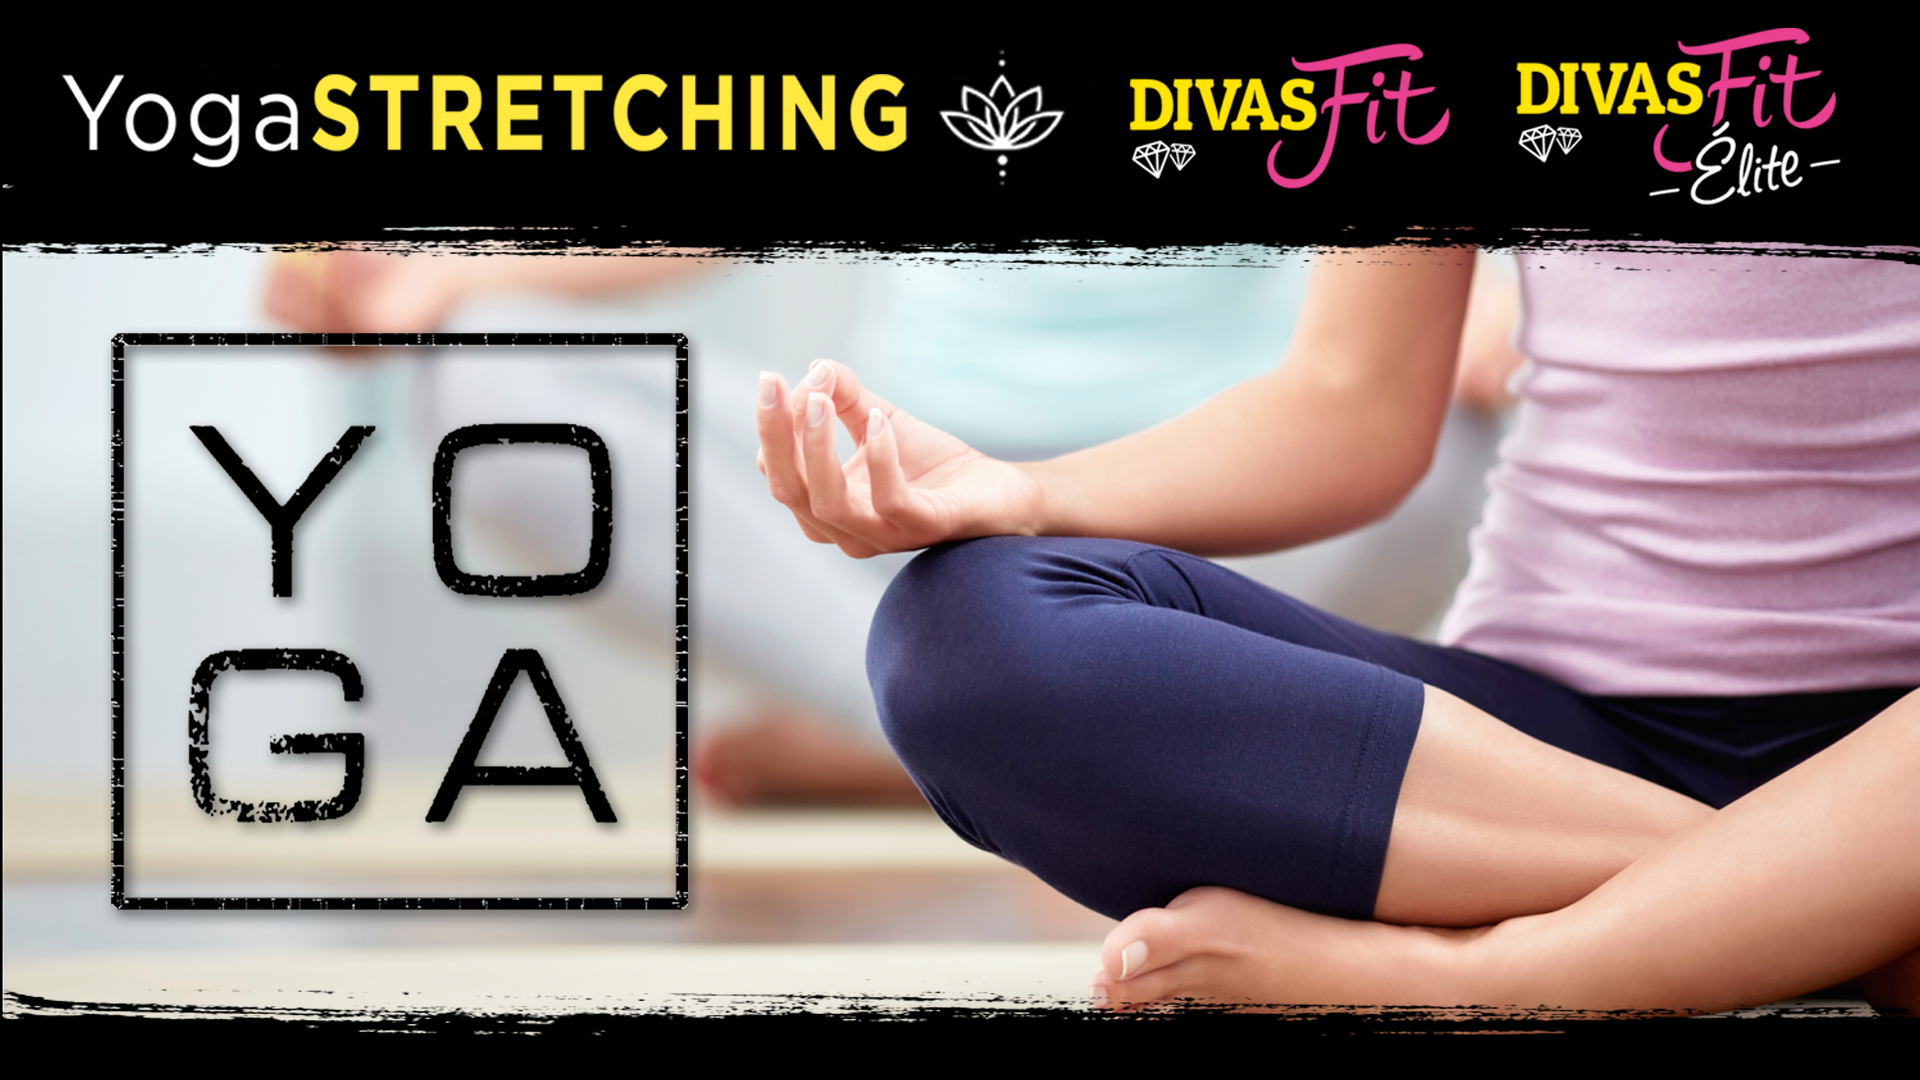 Visuel cours Yoga stretching de DivasFit